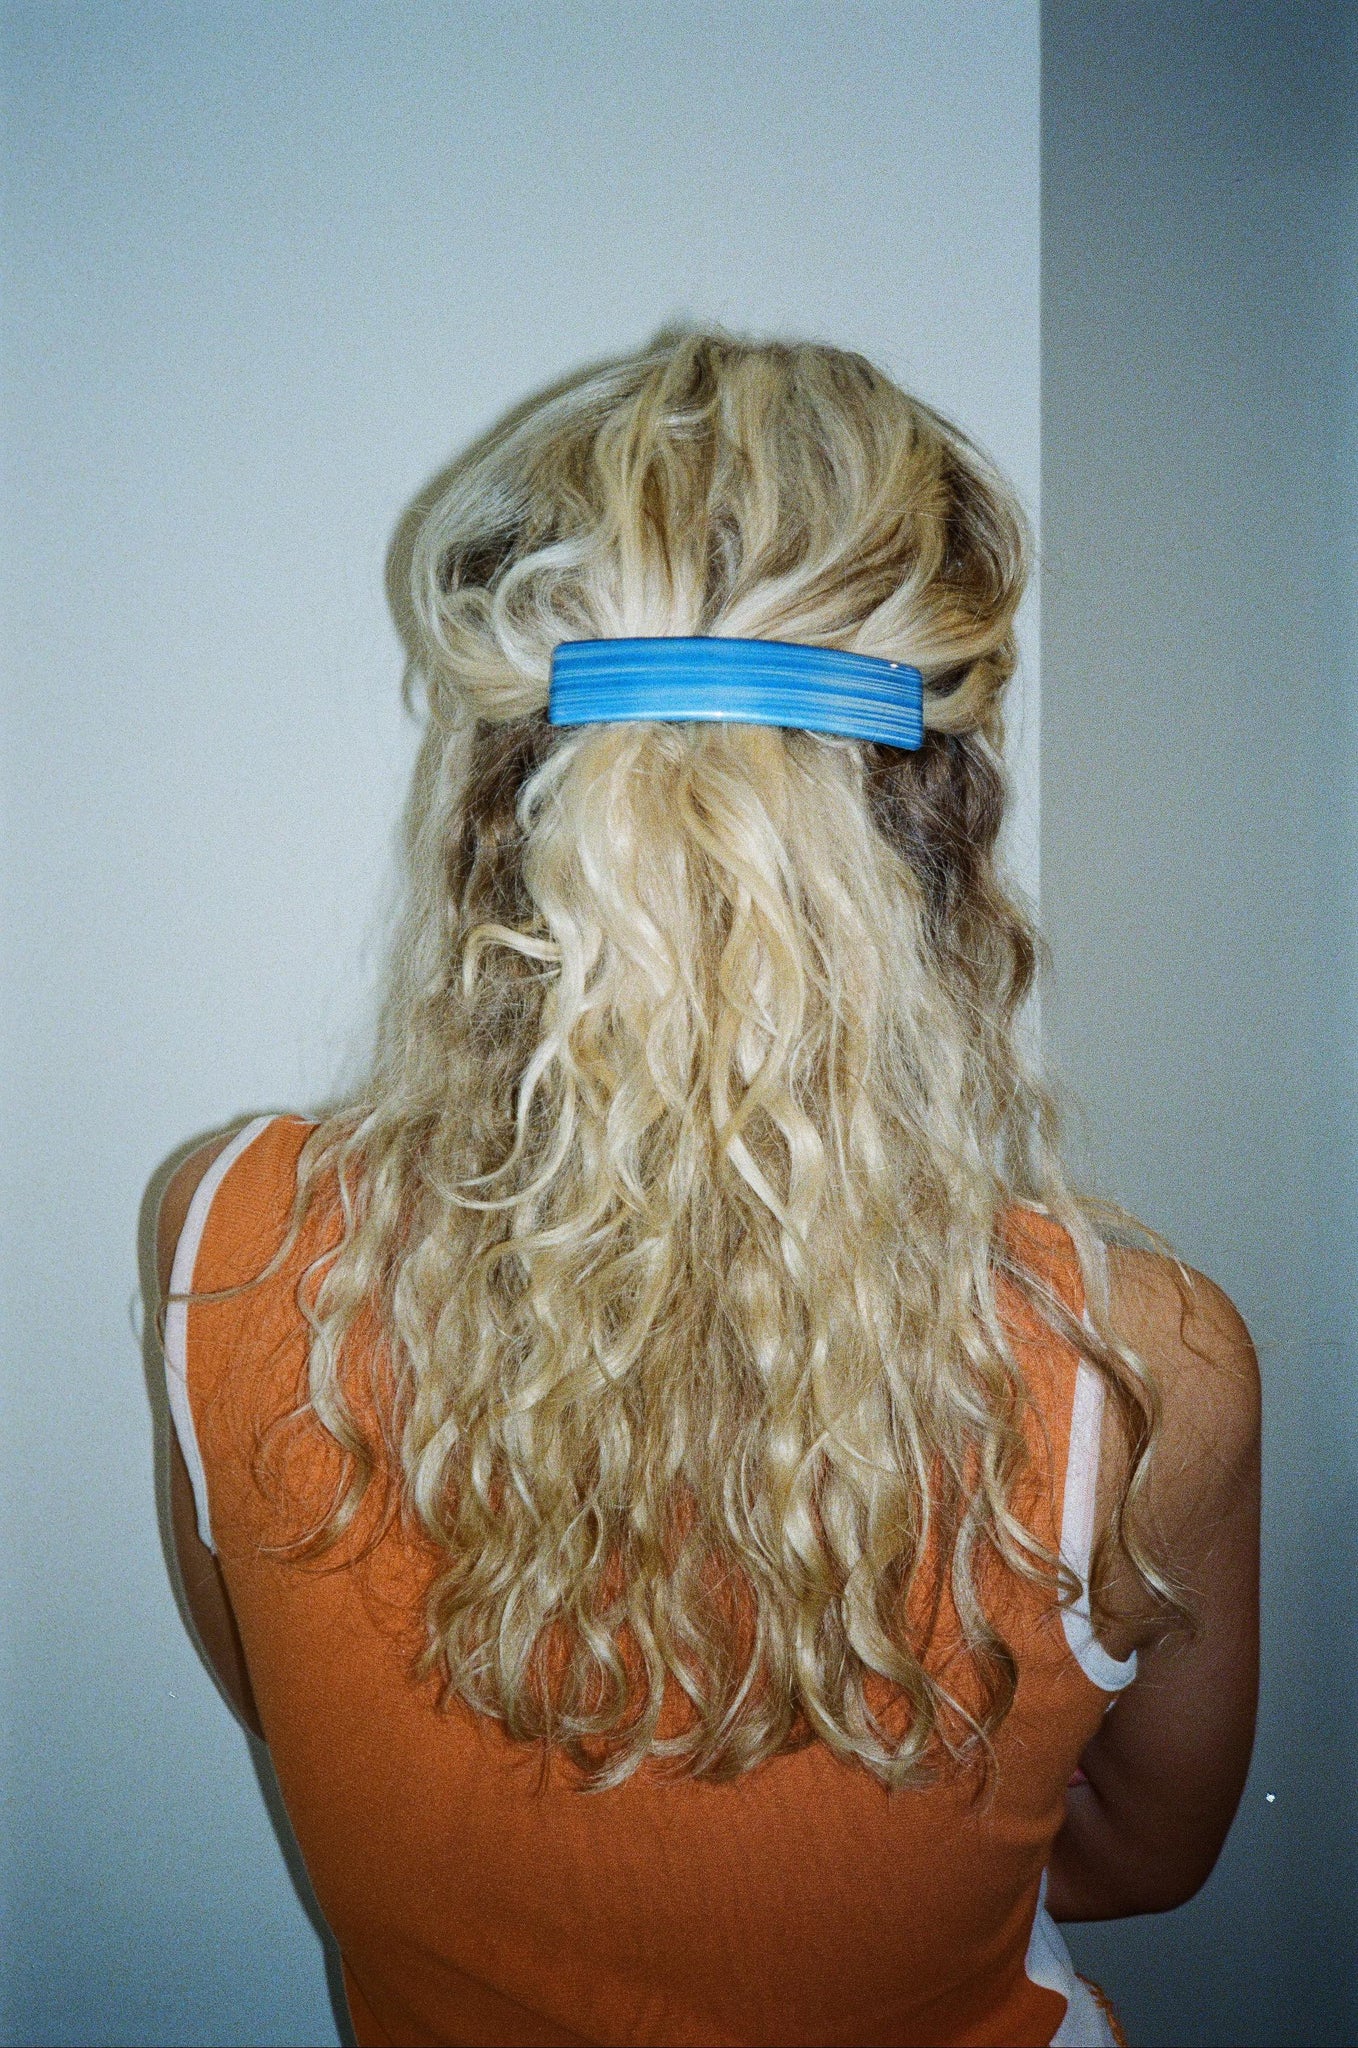 BLUE HAIR CLIP